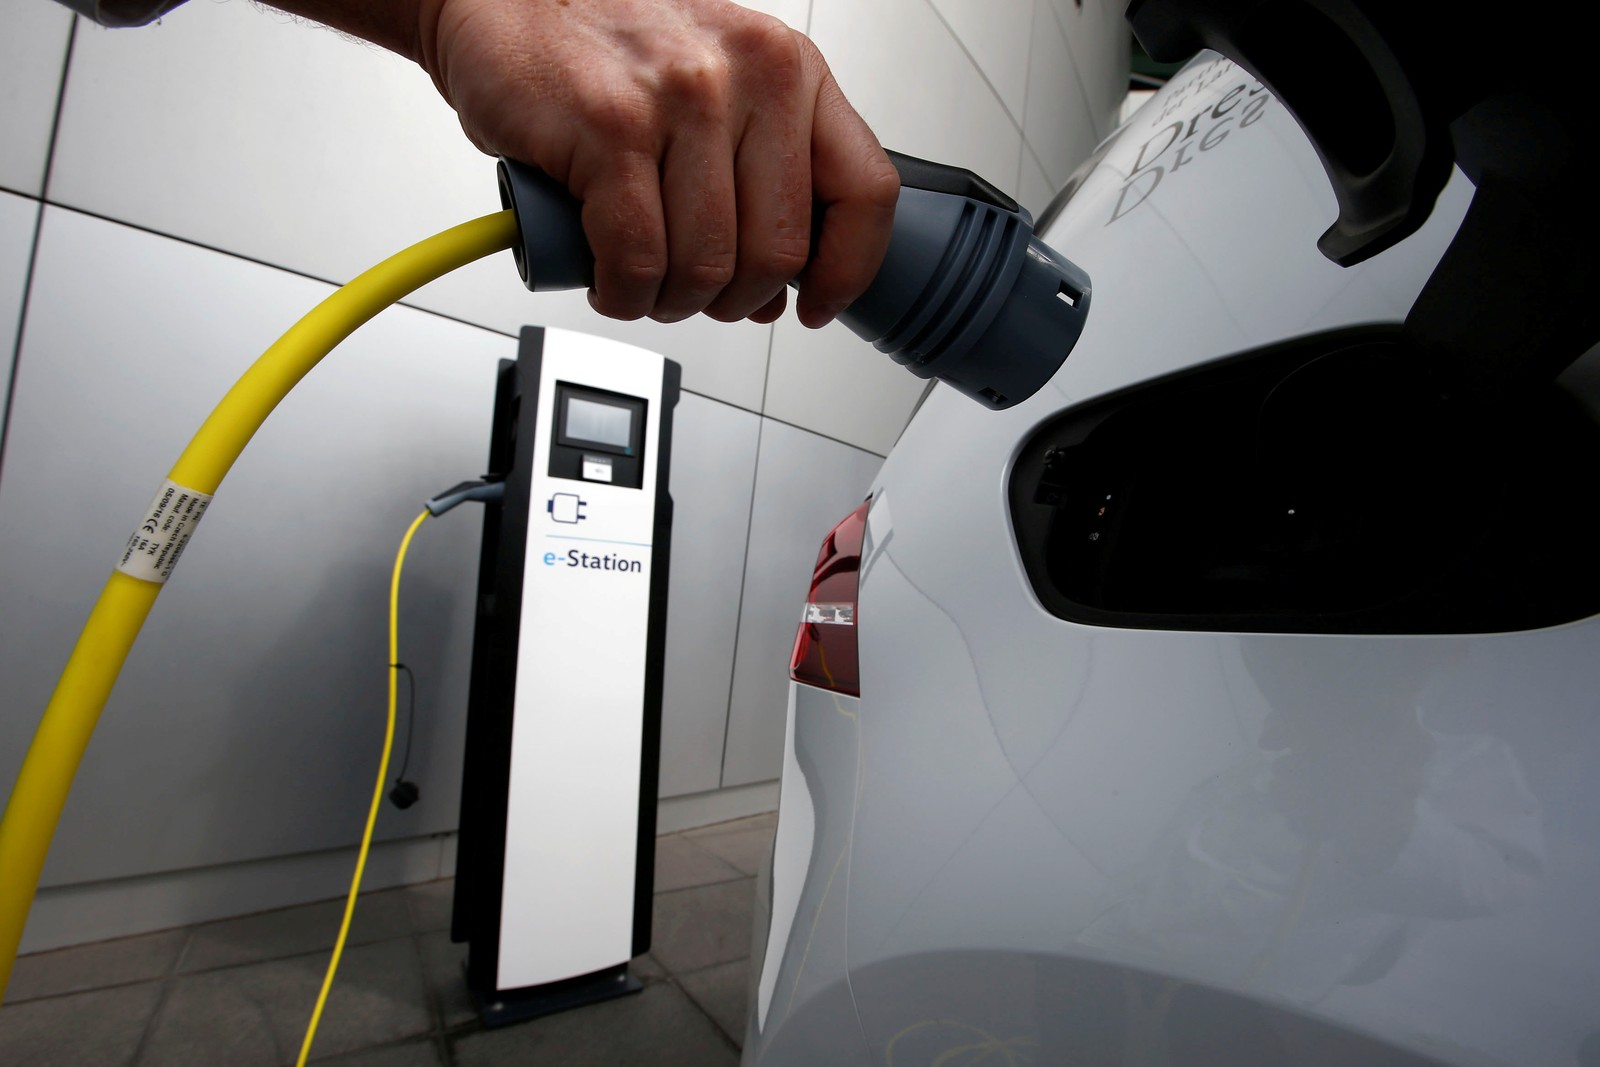 Incentivos a carros elétricos são uma forma cara de reduzir poluição, diz estudo